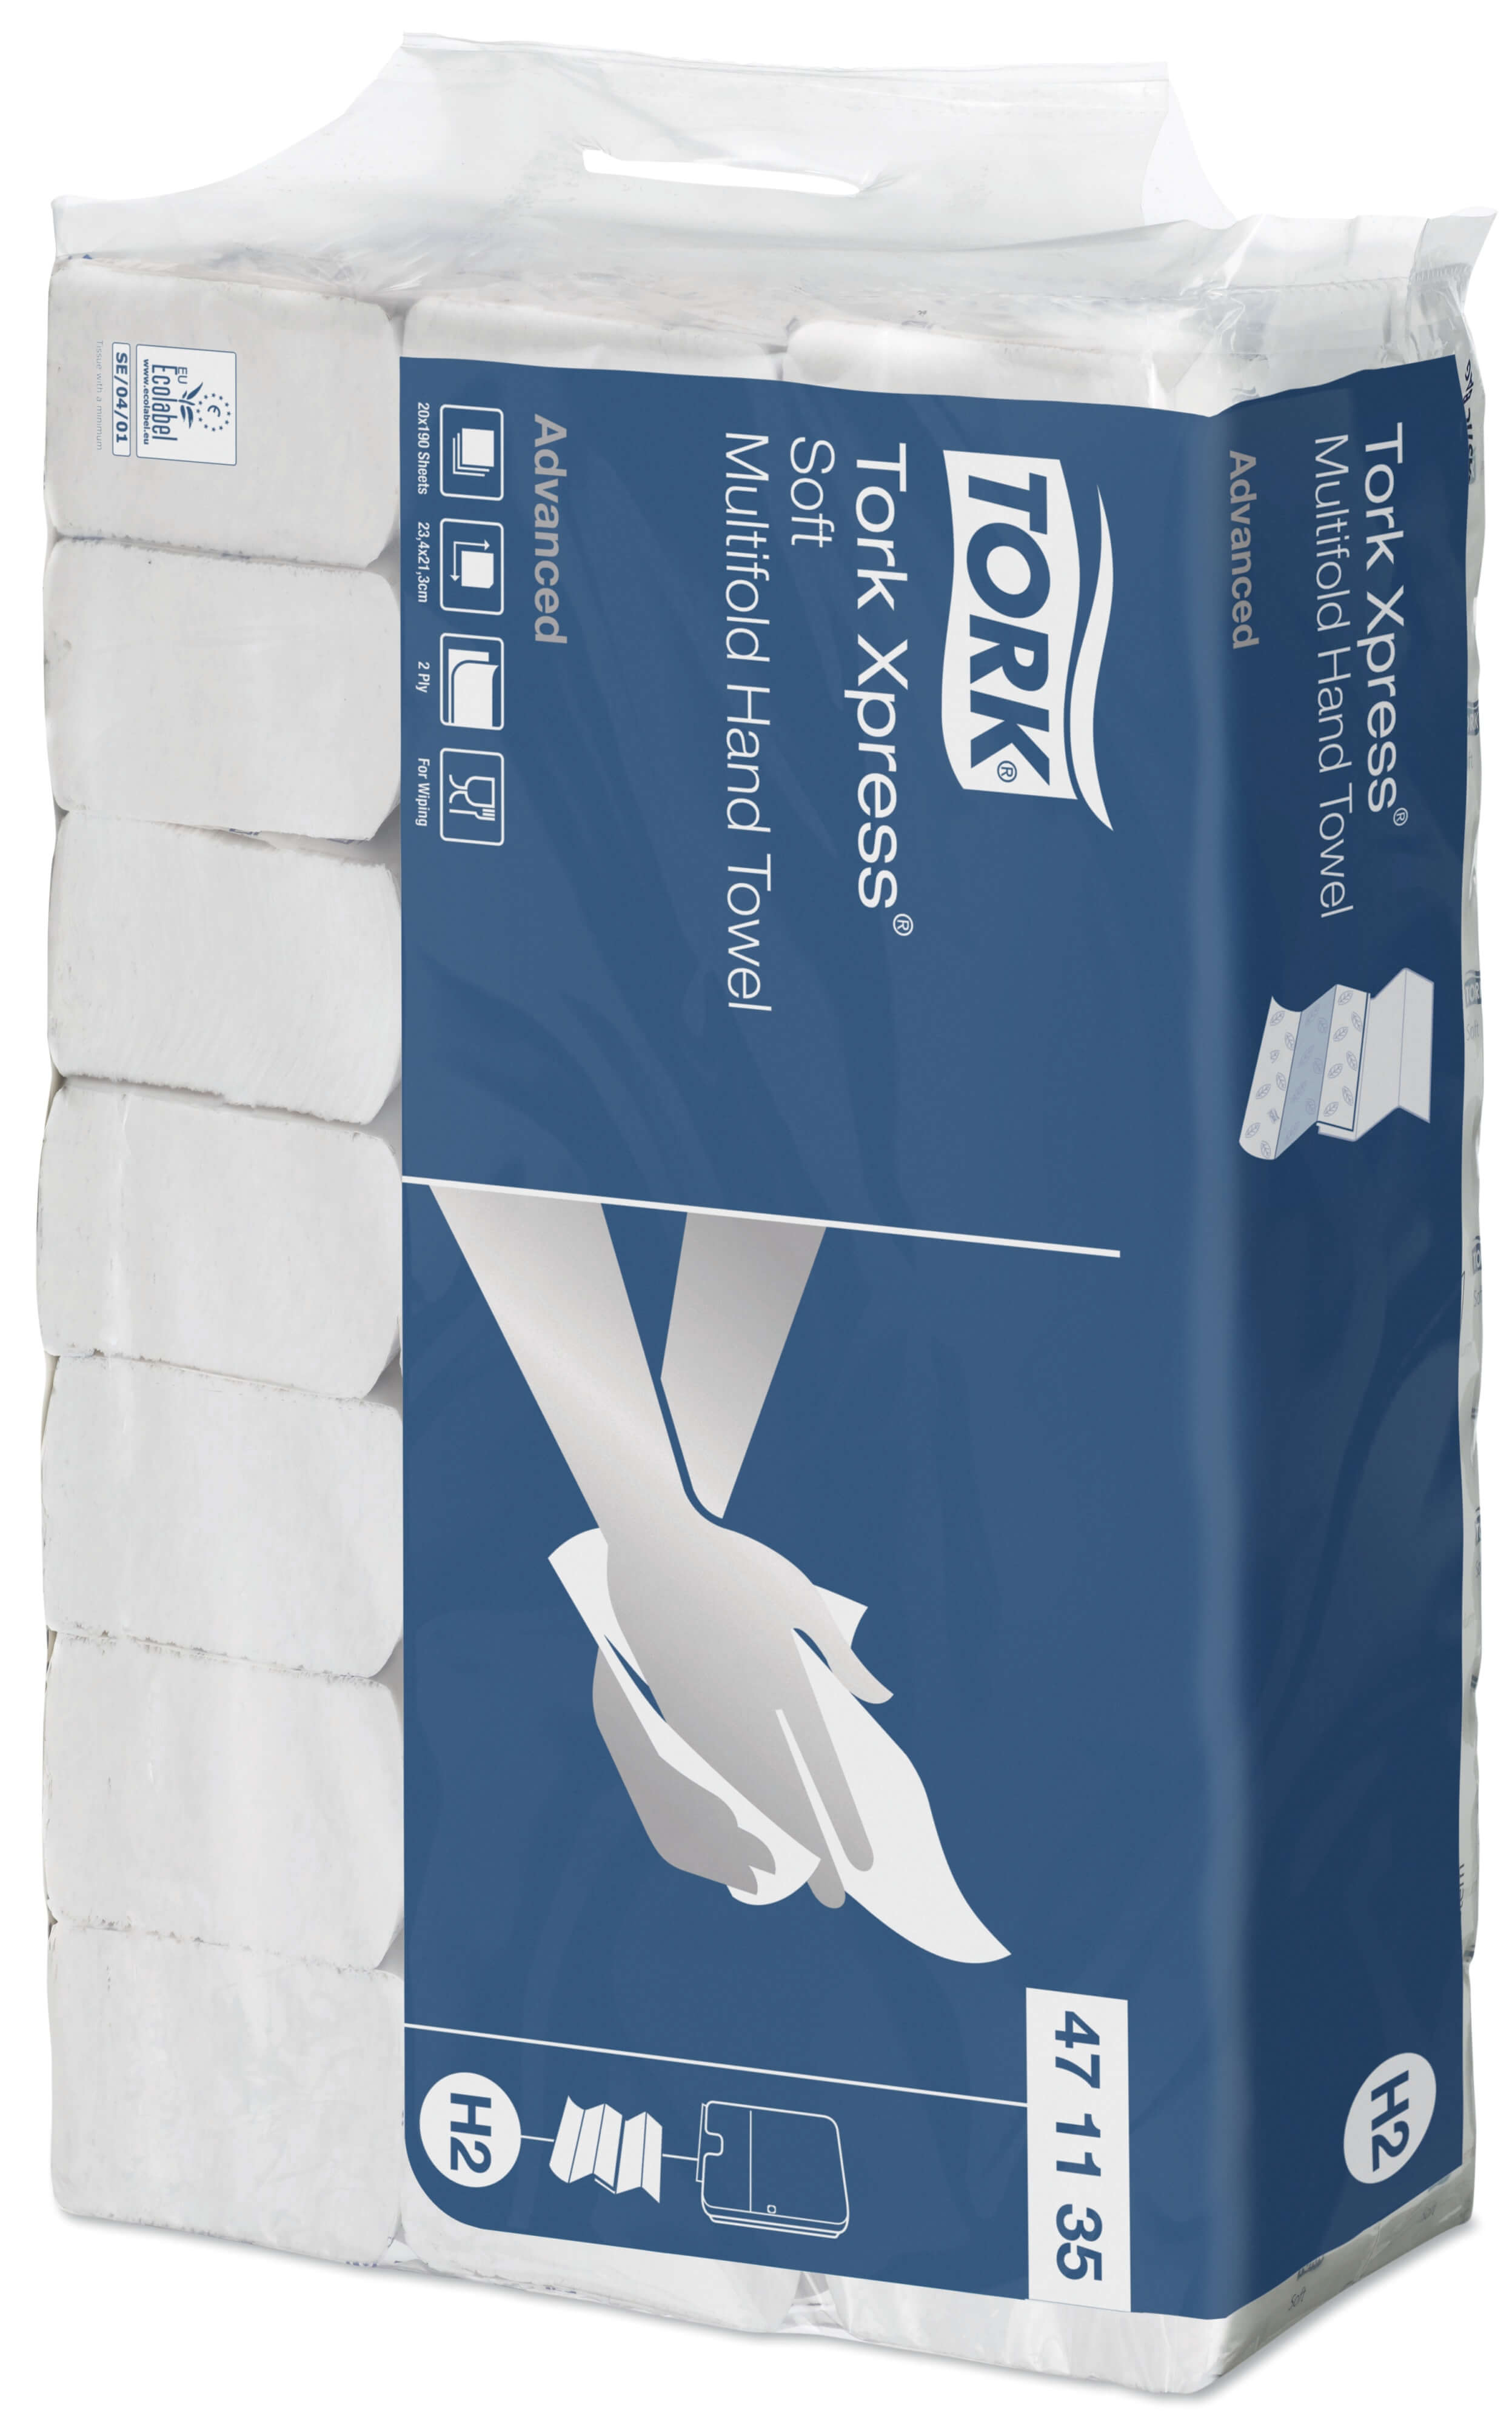 Листовые бумажные полотенца Tork Xpress® Advanced двухслойные, Multifold сложения (мягкие)